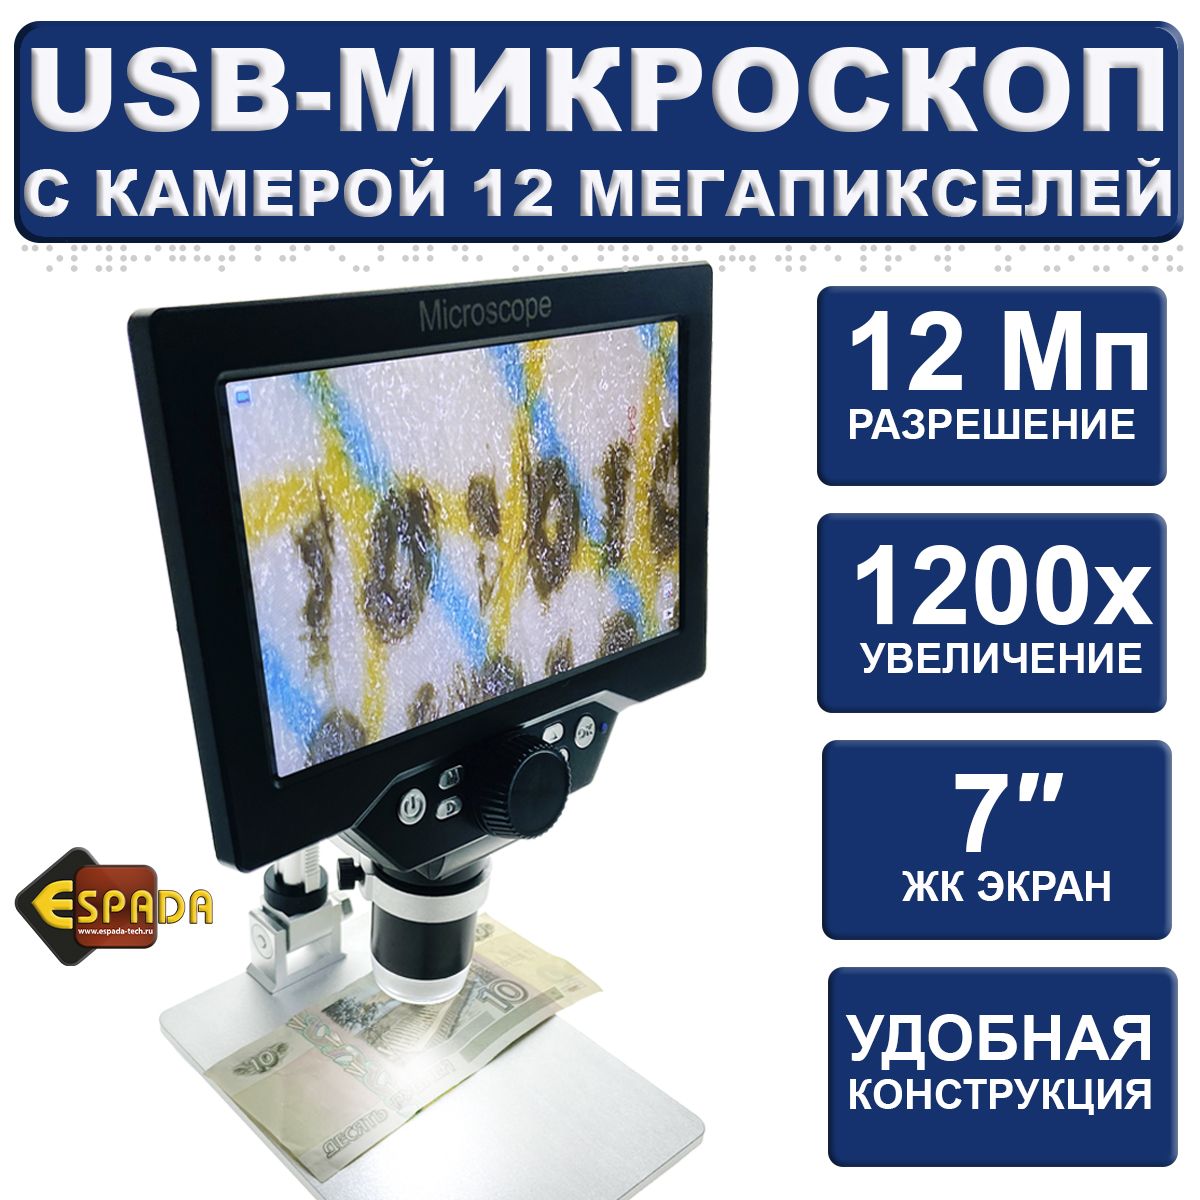 Микроскоп монокуляр Espada USB G1200B с дисплеем 7 и подставкой